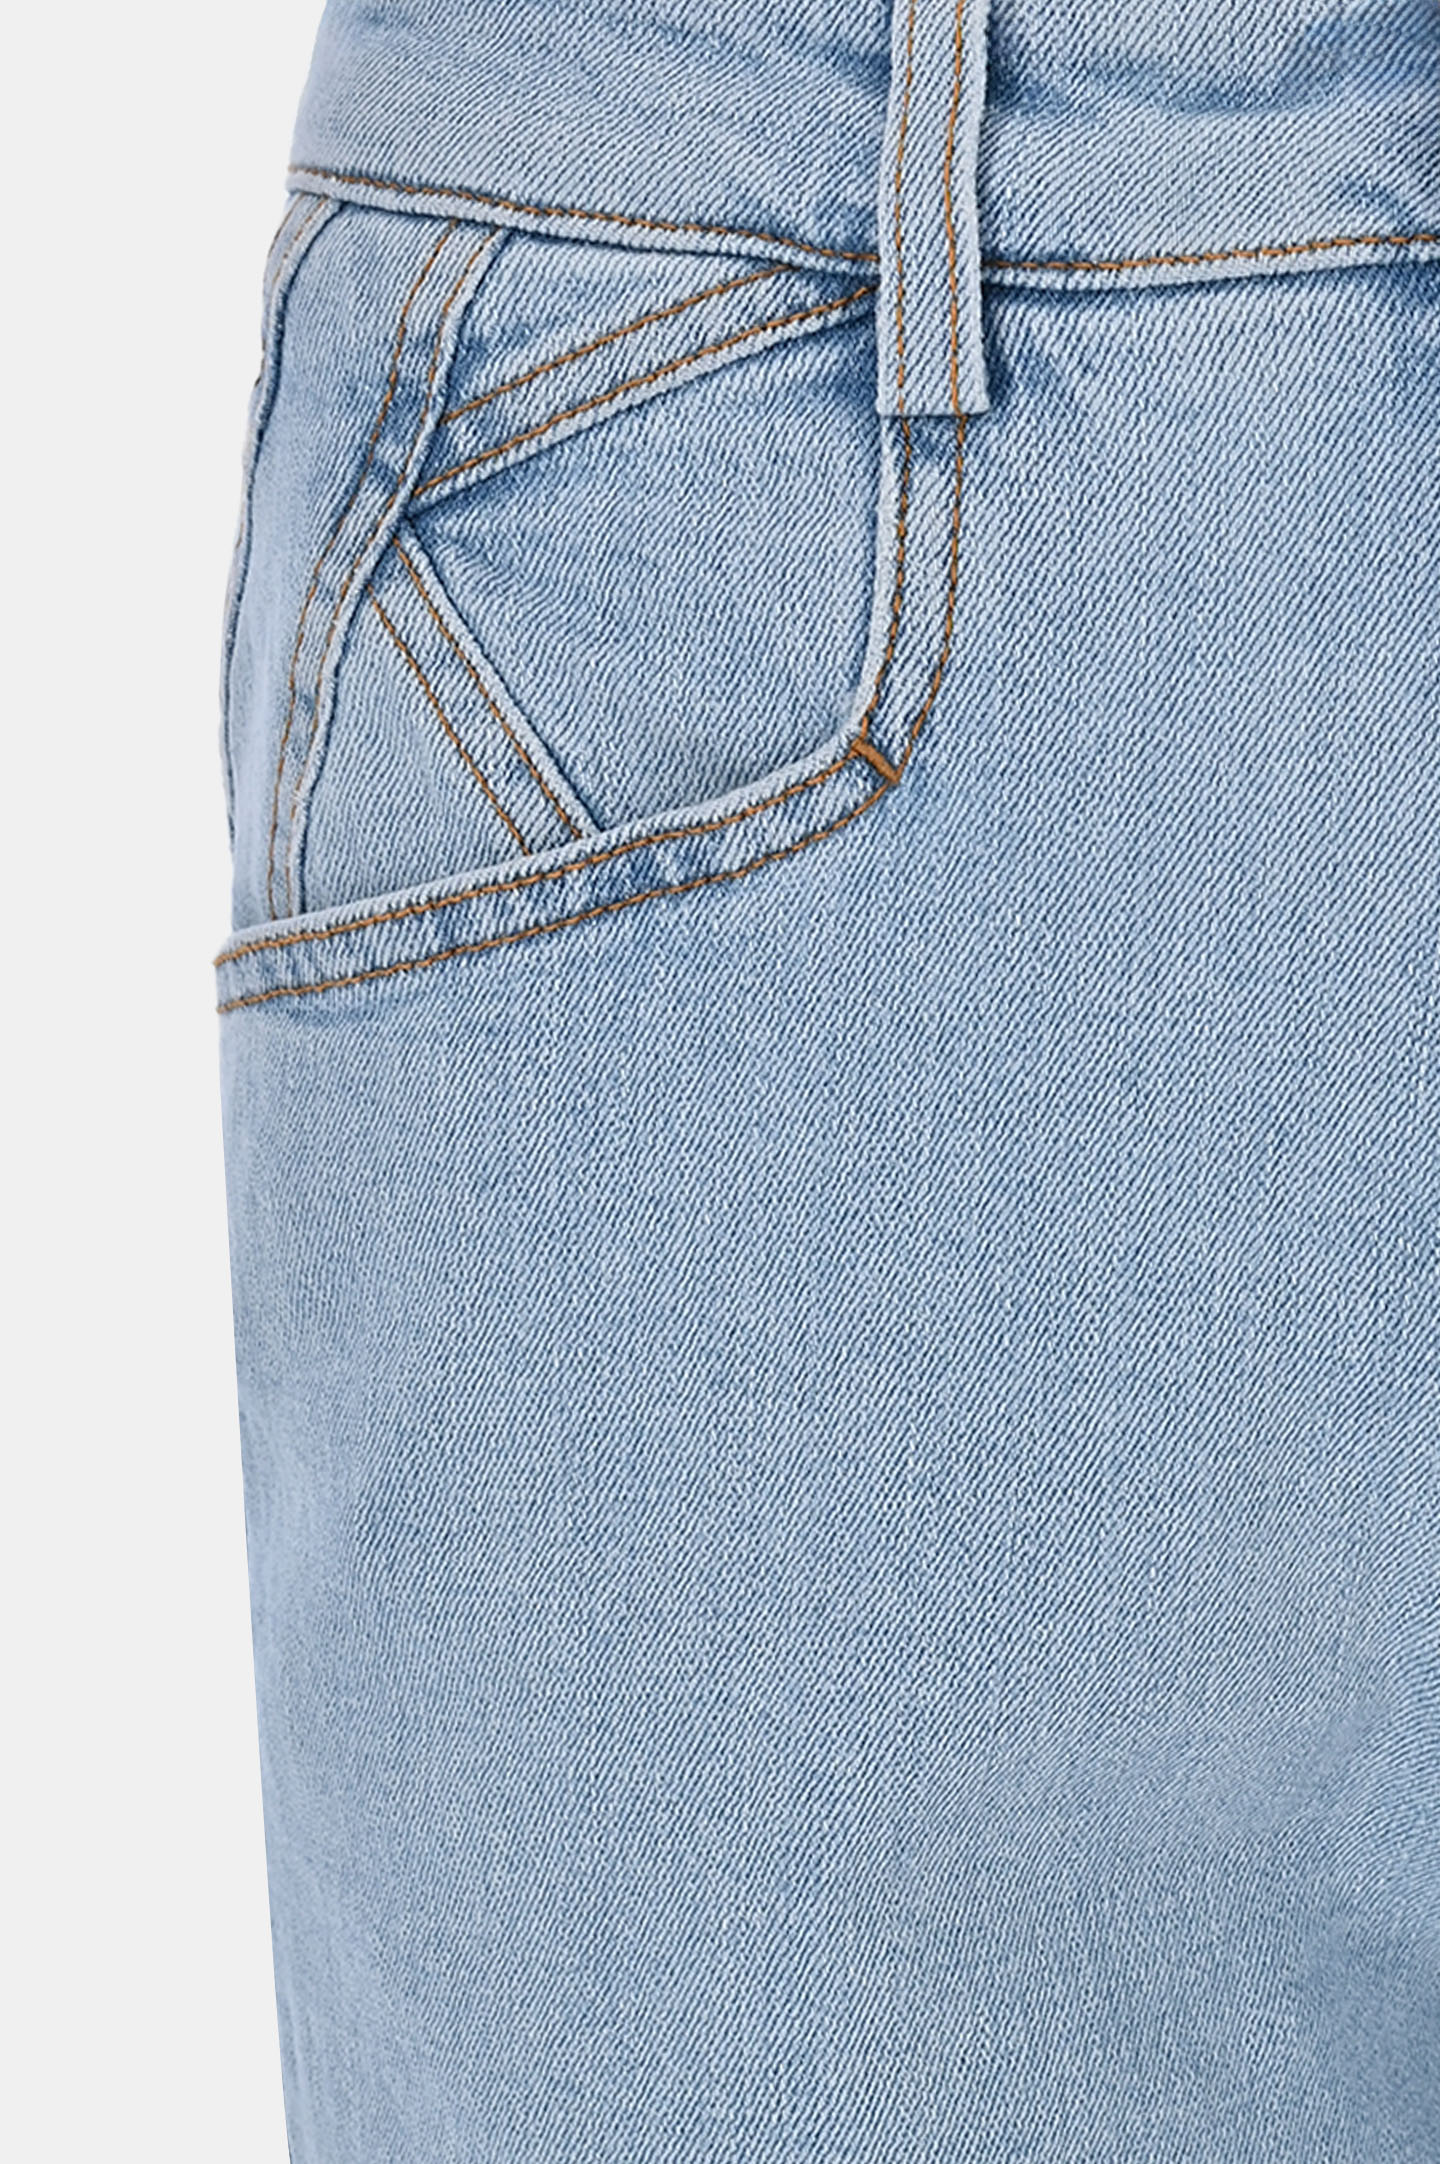 Широкие джинсы из хлопка и эластана KITON DJ53102K0900D0, цвет: Голубой, Женский